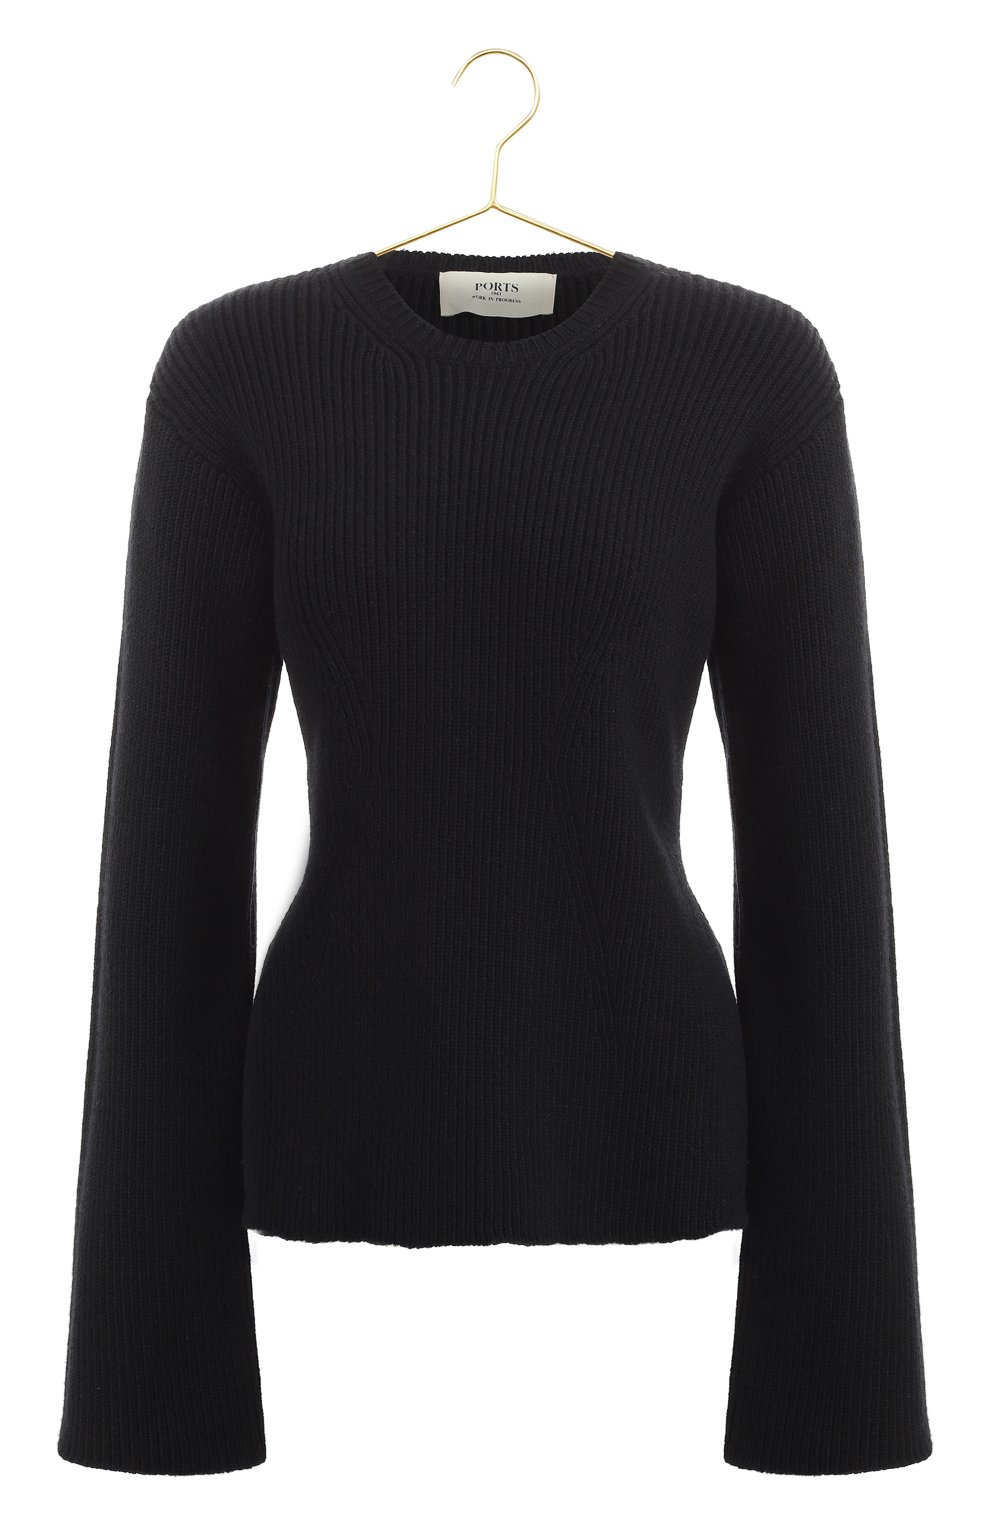 Шерстяной пуловер | Ports 1961 | Чёрный - 1